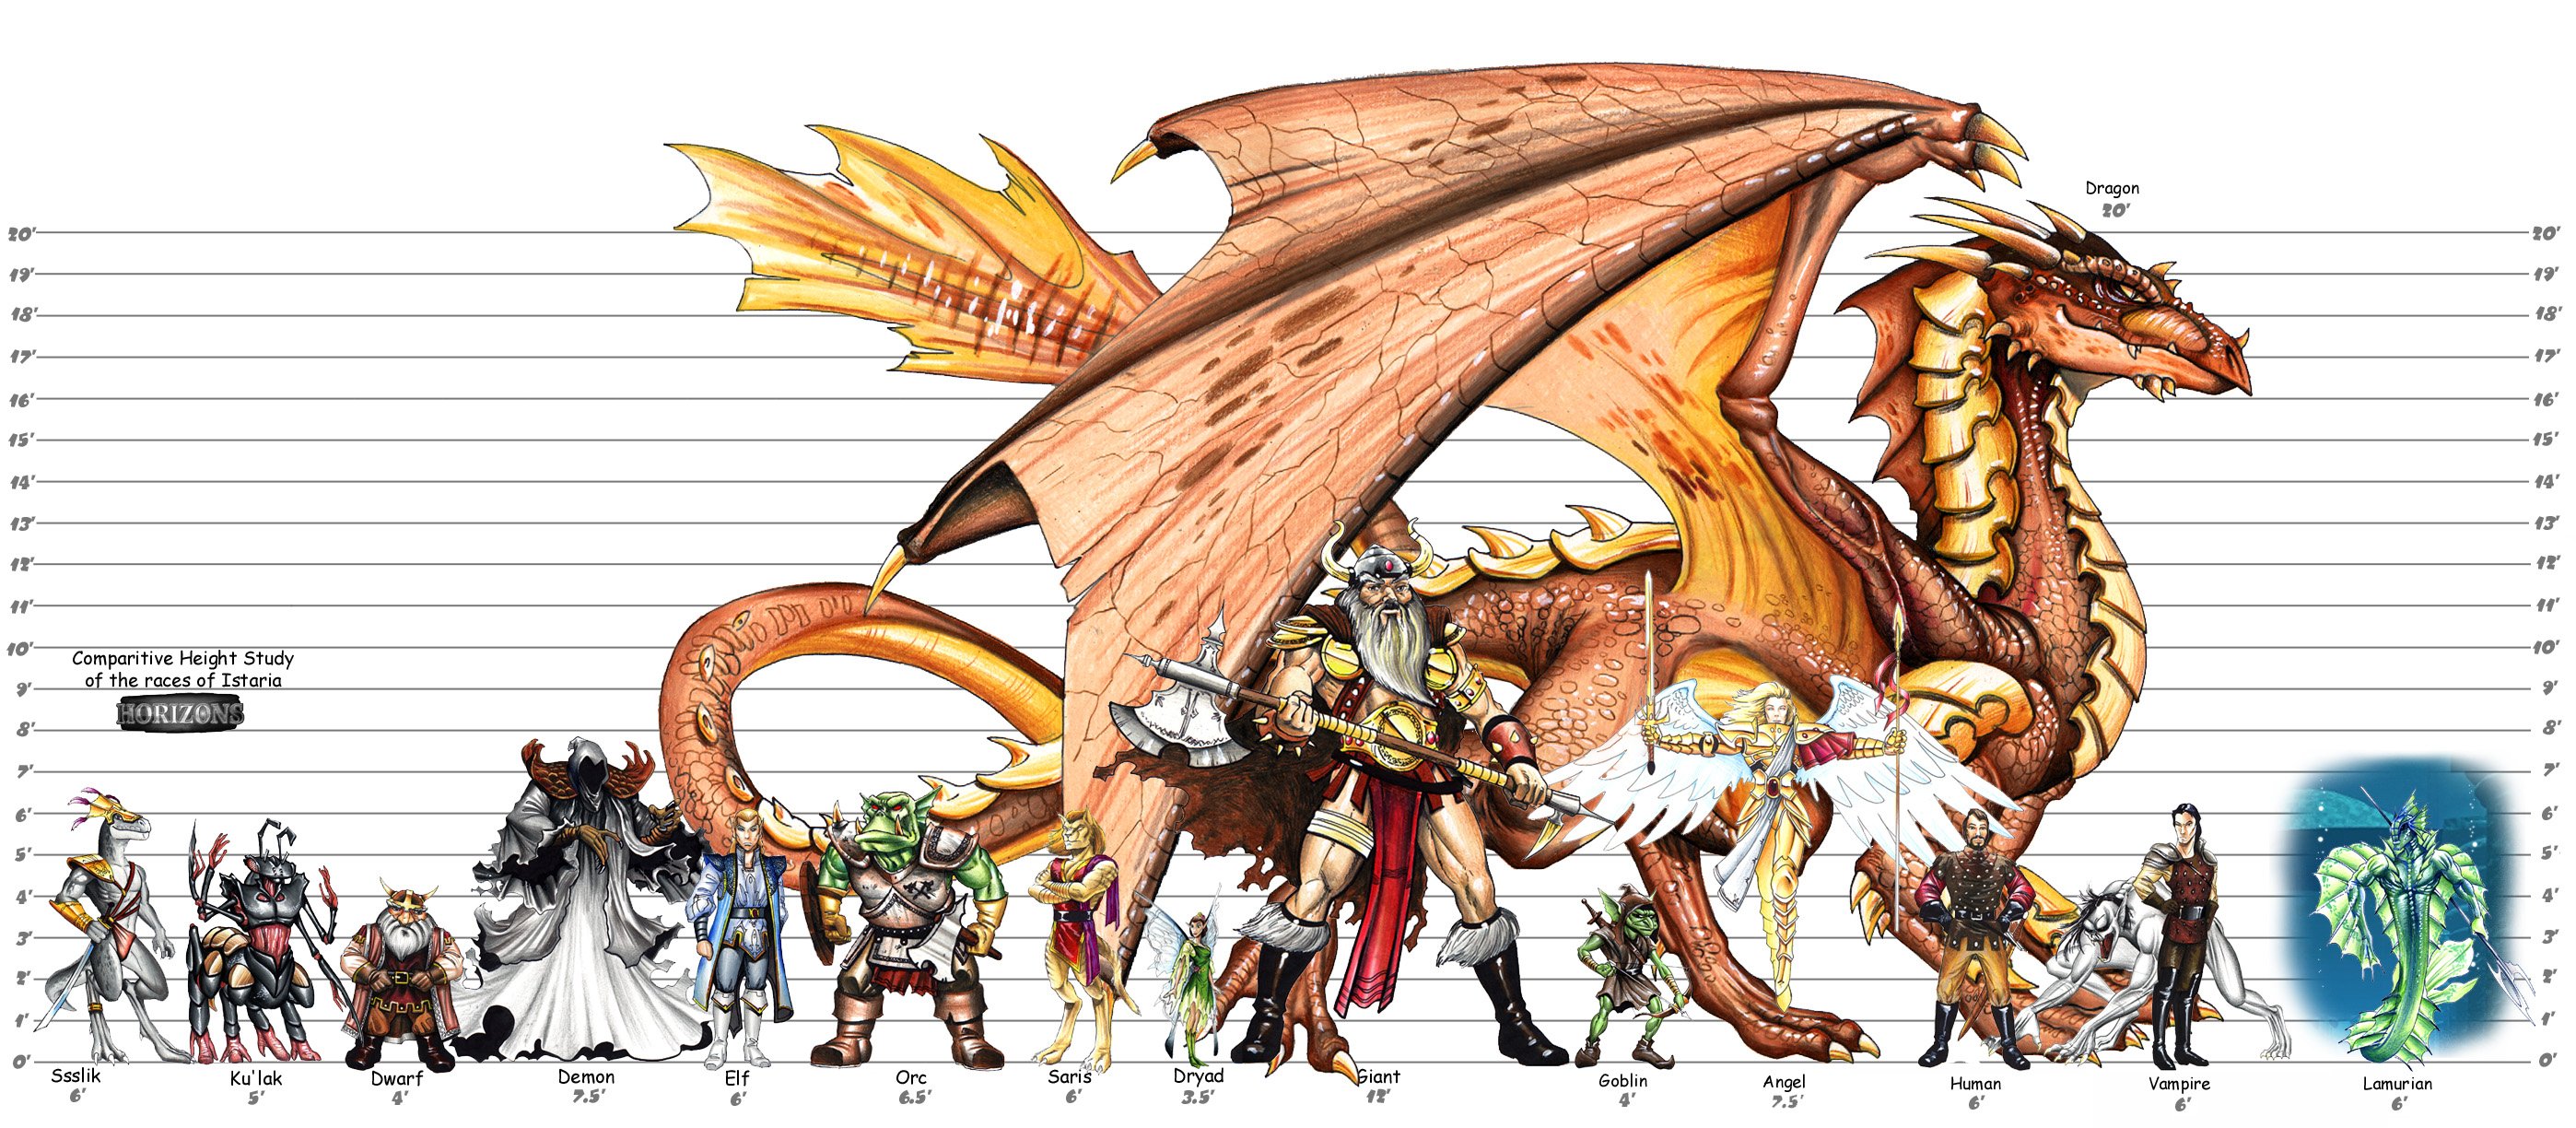 Размеры дракона и человека